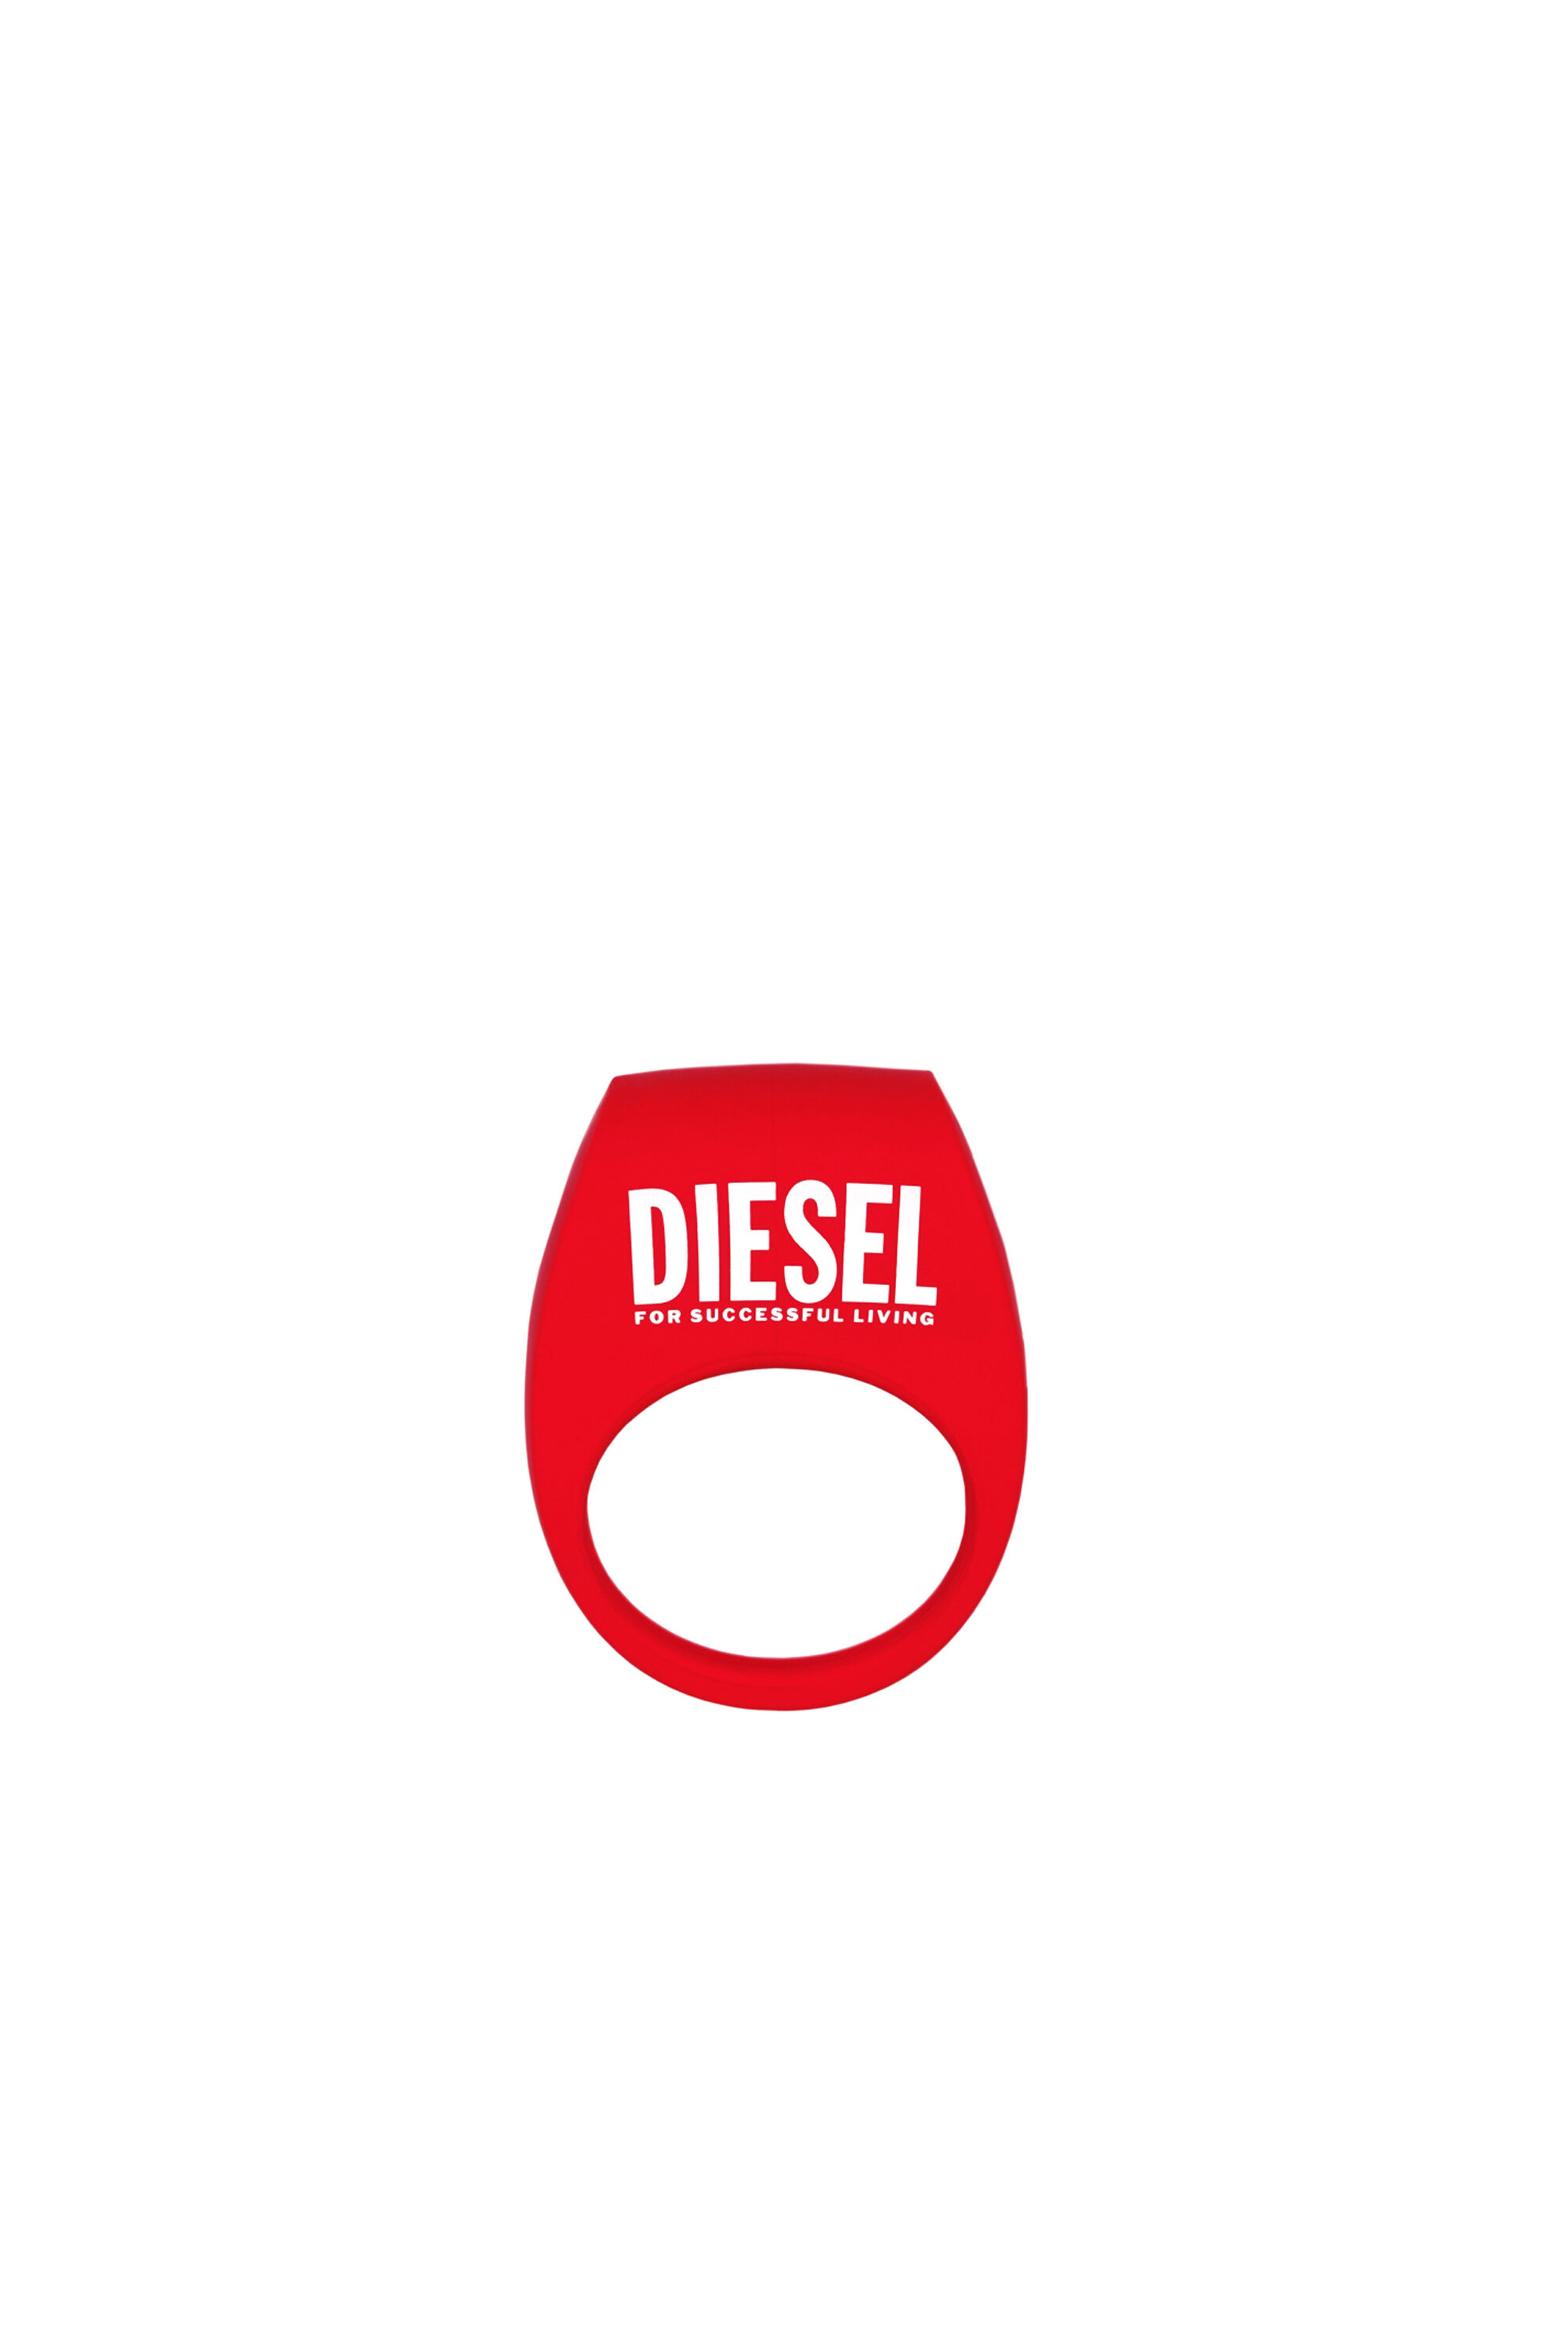 Diesel - 8694 TOR 2 X DIESEL, Rot - Image 2